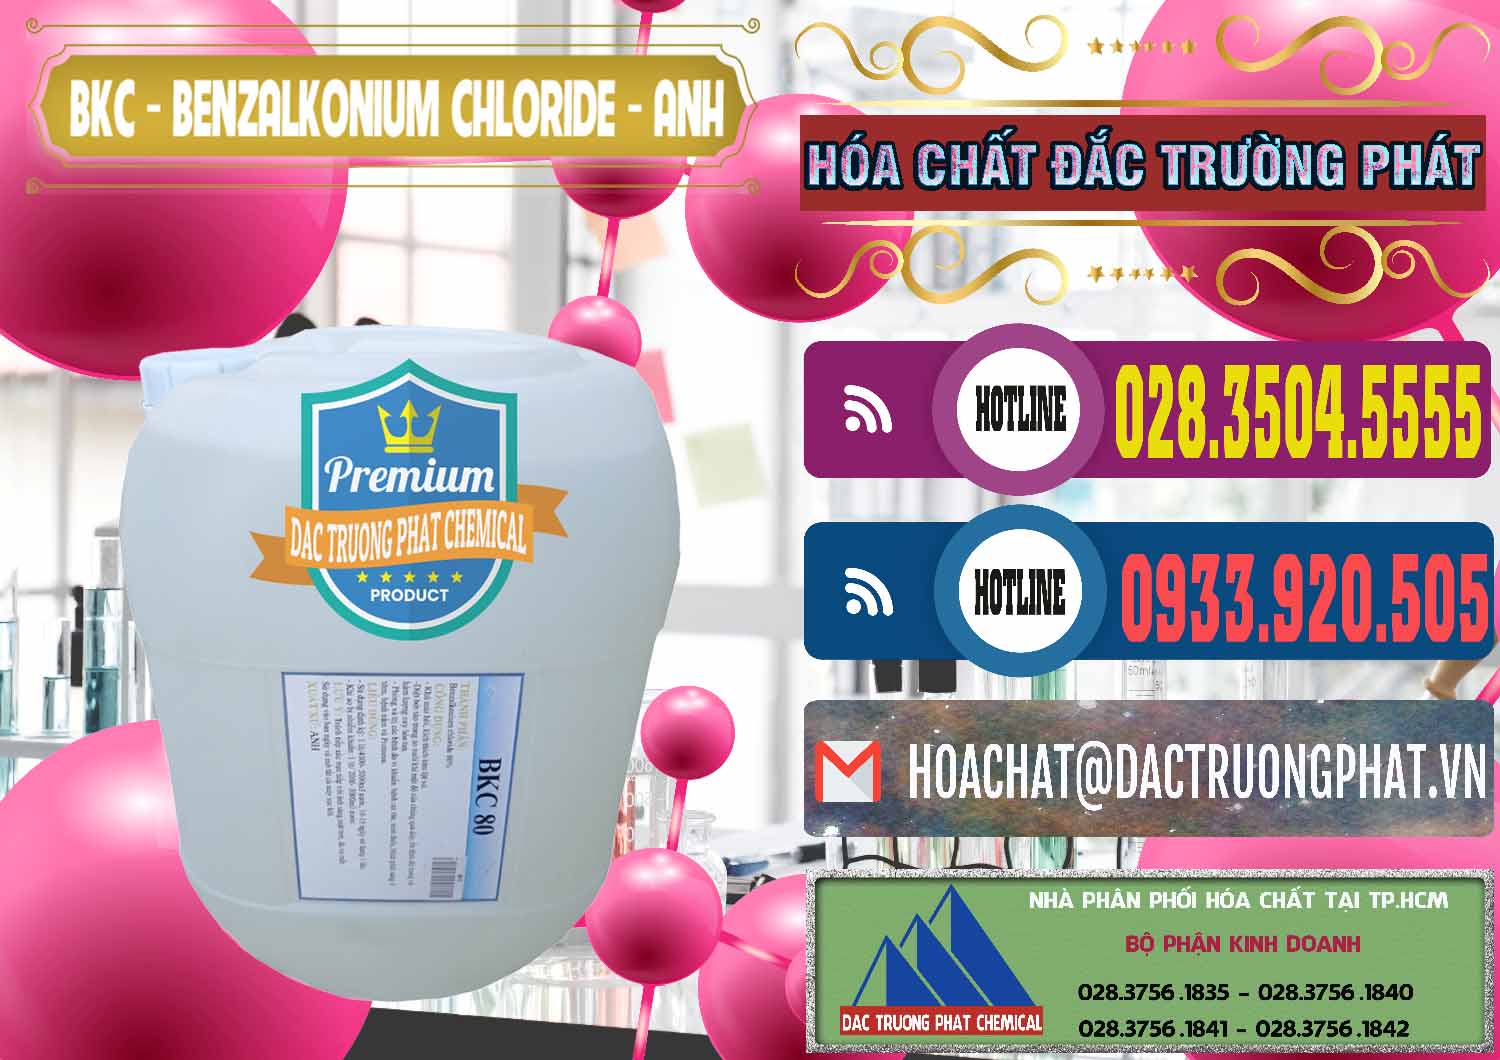 Công ty kinh doanh & bán BKC - Benzalkonium Chloride Anh Quốc Uk Kingdoms - 0415 - Nơi cung cấp & kinh doanh hóa chất tại TP.HCM - muabanhoachat.com.vn